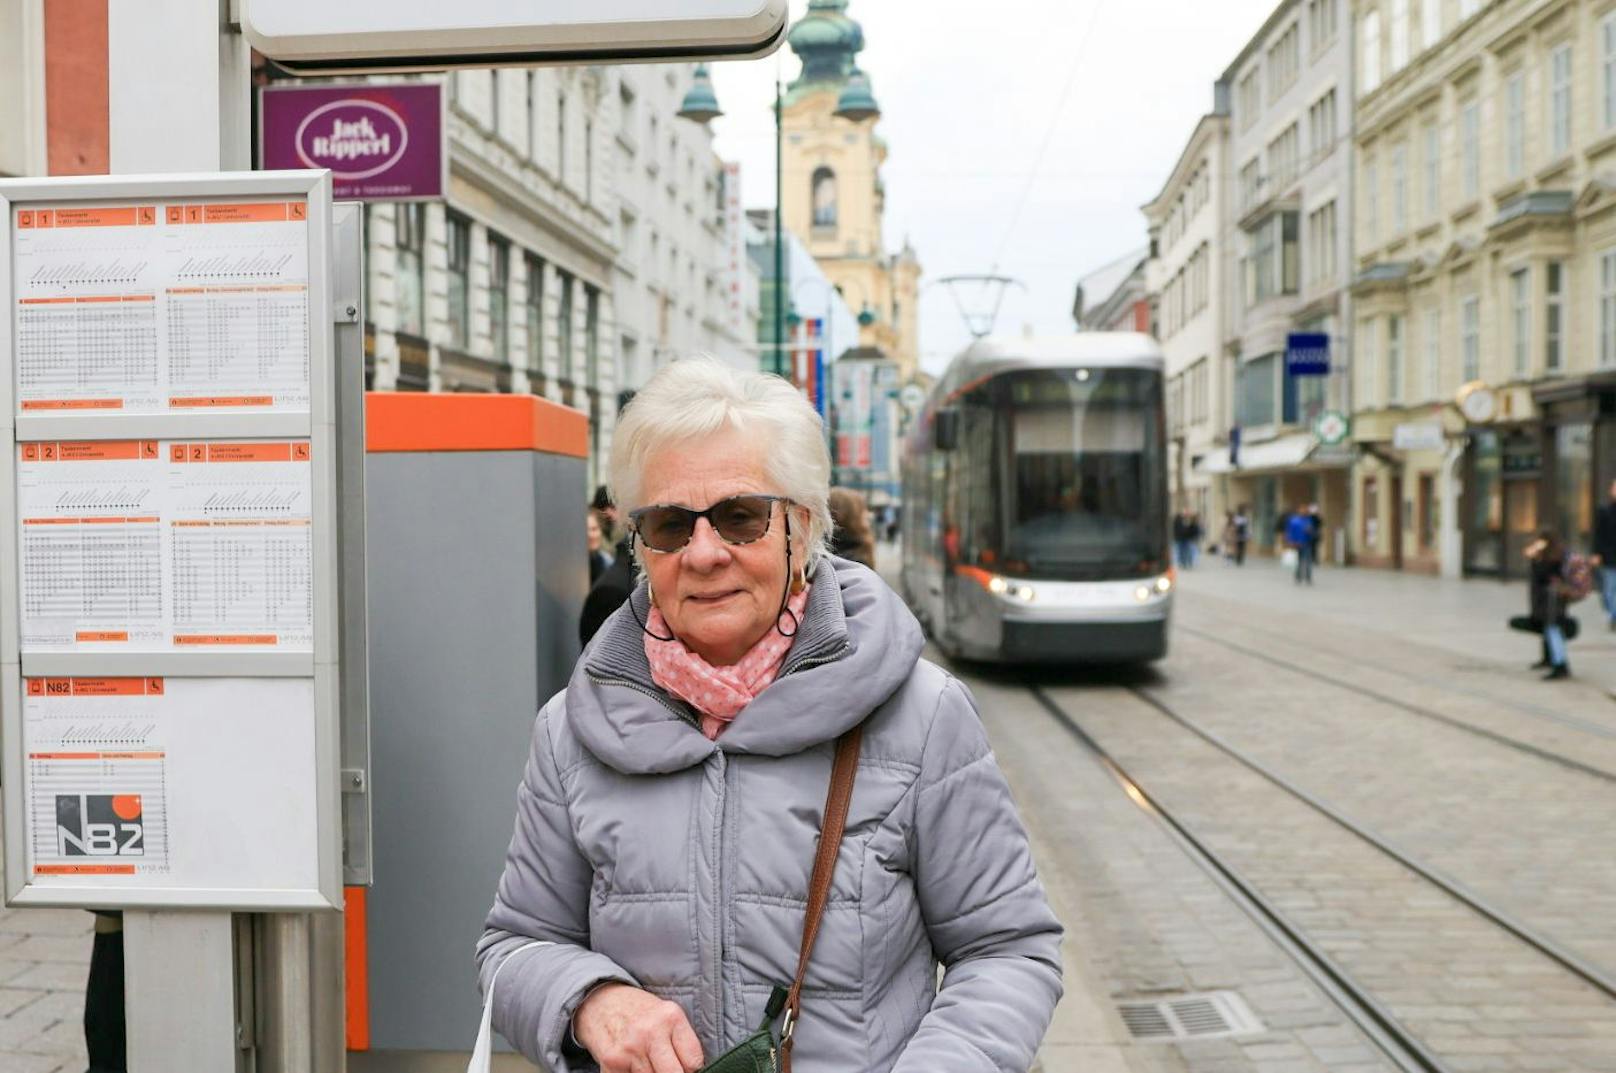 Hanna R. (73) aus Neuhofen:&nbsp;"Ich fahre fast nicht mehr mit dem Auto, sondern bin auf Straßenbahn und Bus umgestiegen. Ich hab mir auch ein Klimaticket gekauft."